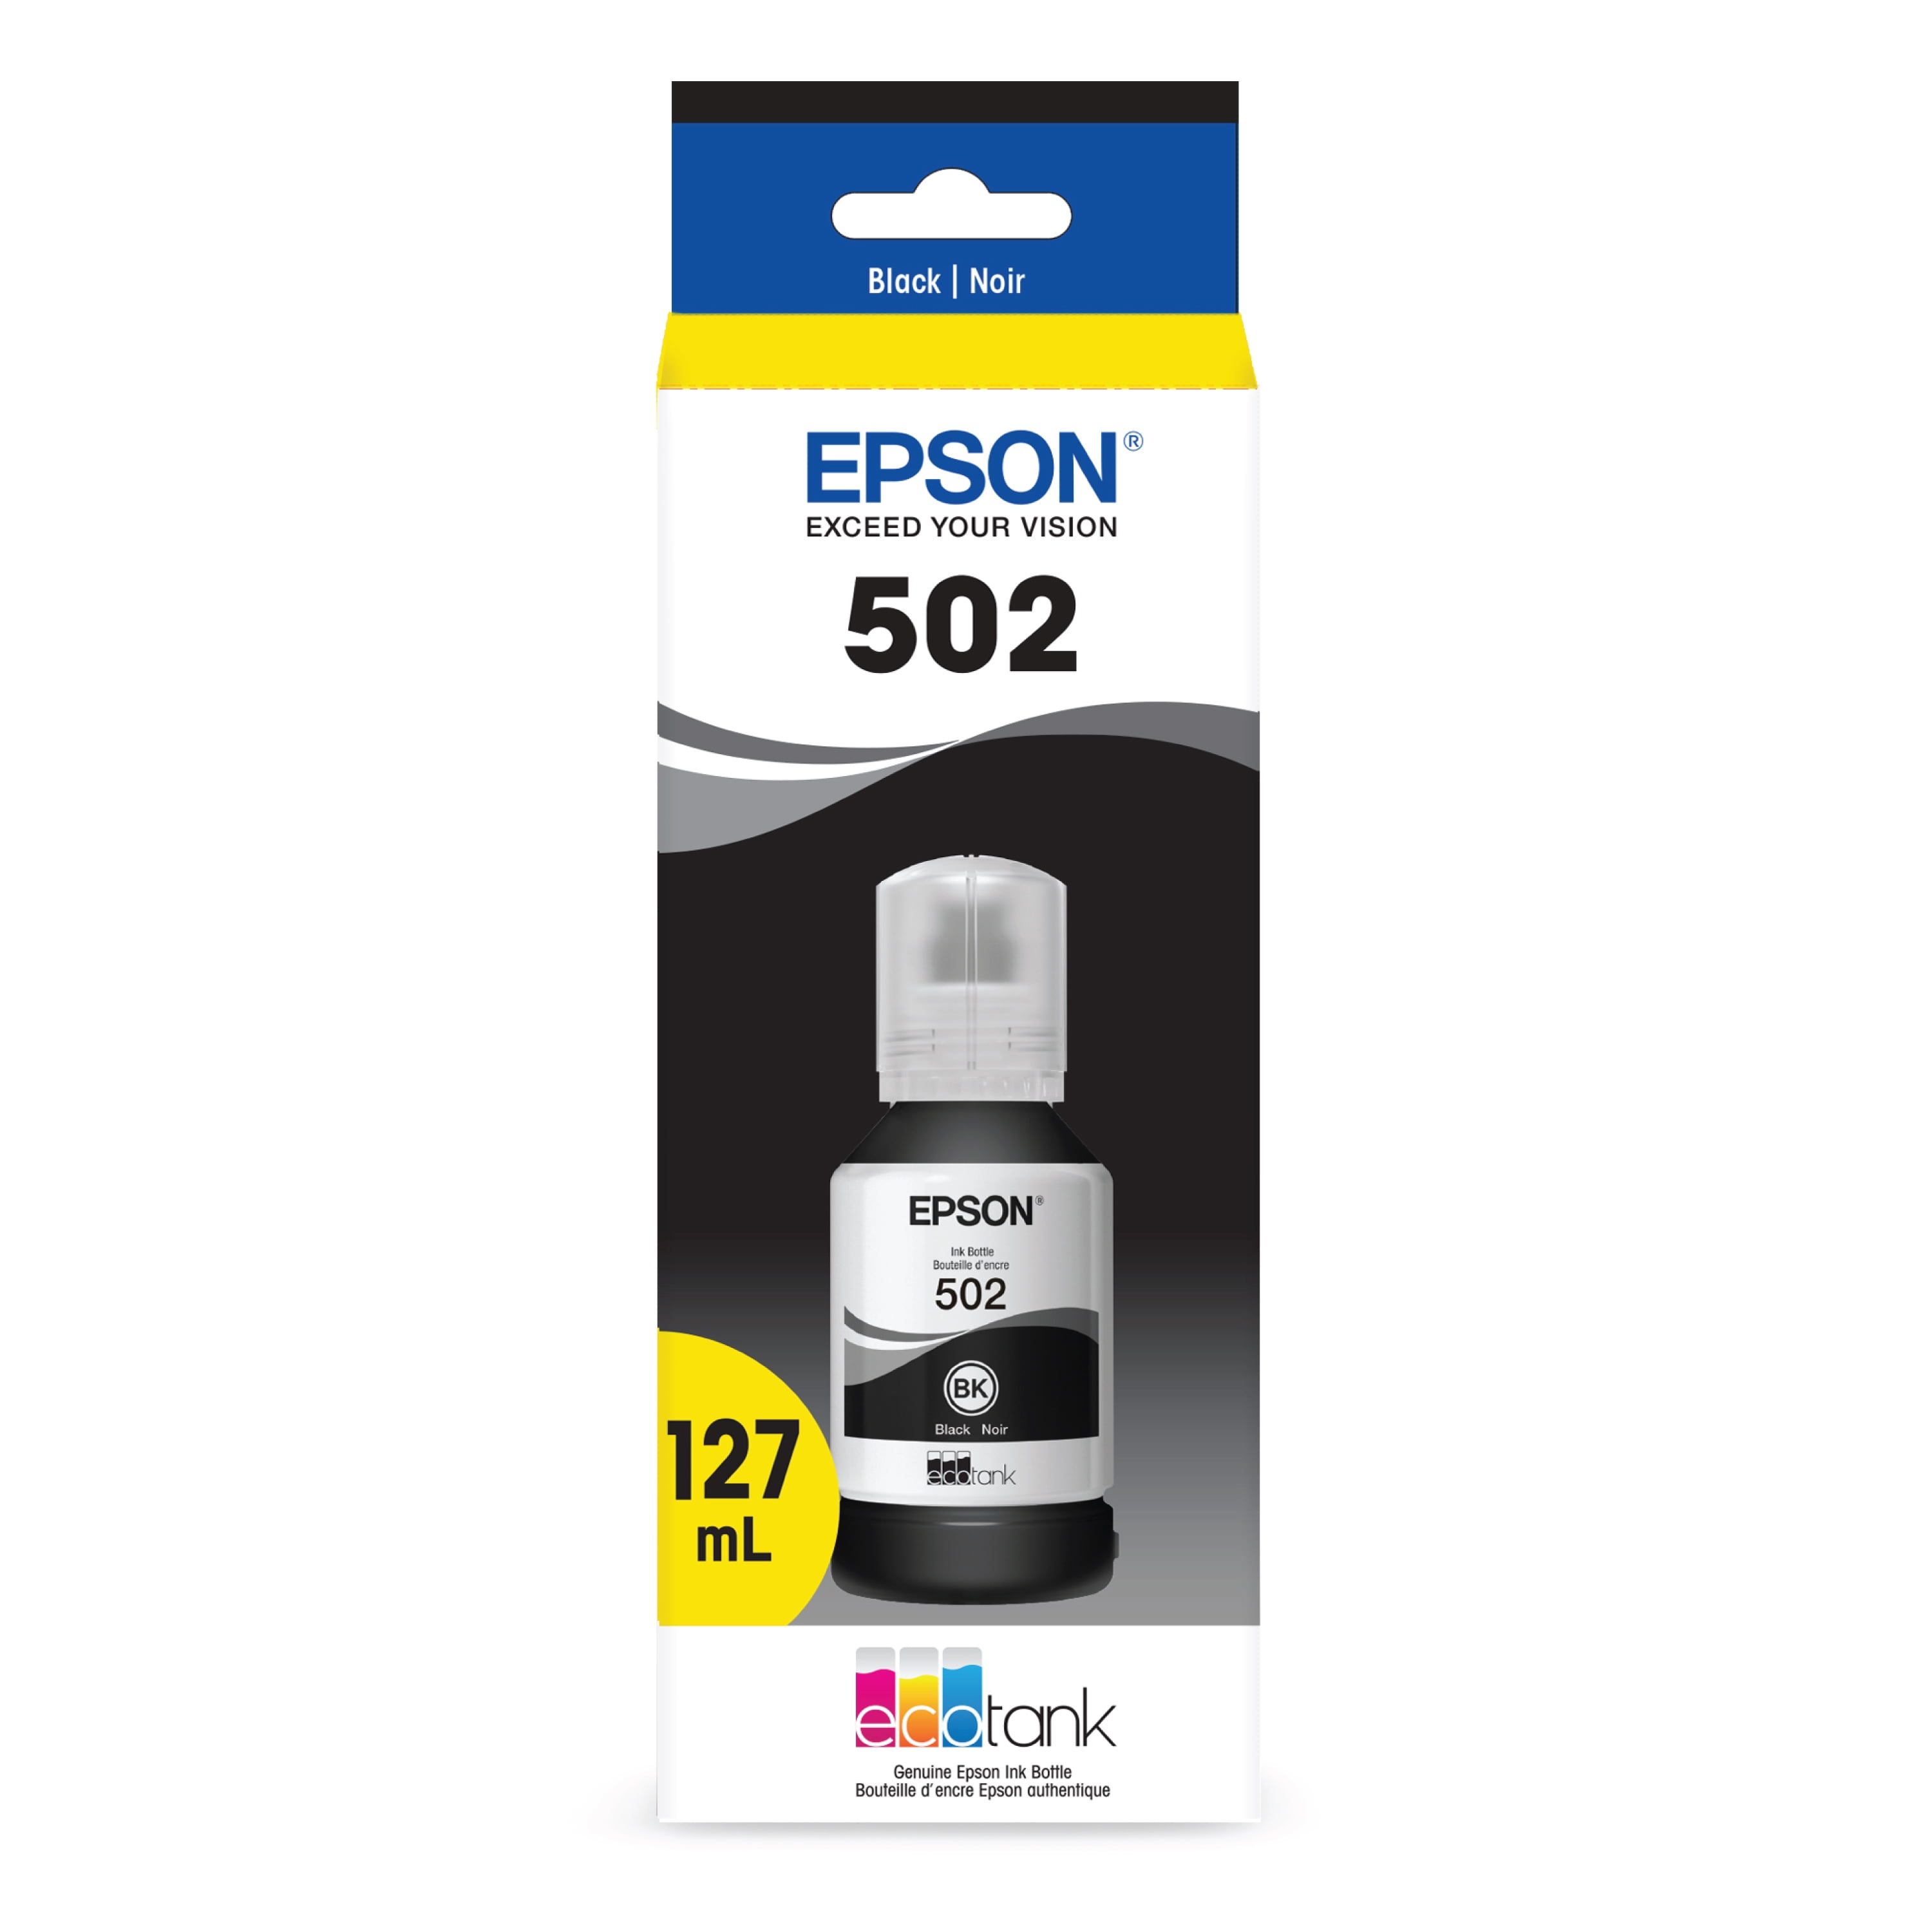 Epson Ecotank ET-1810 : Pack Bouteilles d'Encre Epson 104 Noire Et Couleurs  Compatibles 